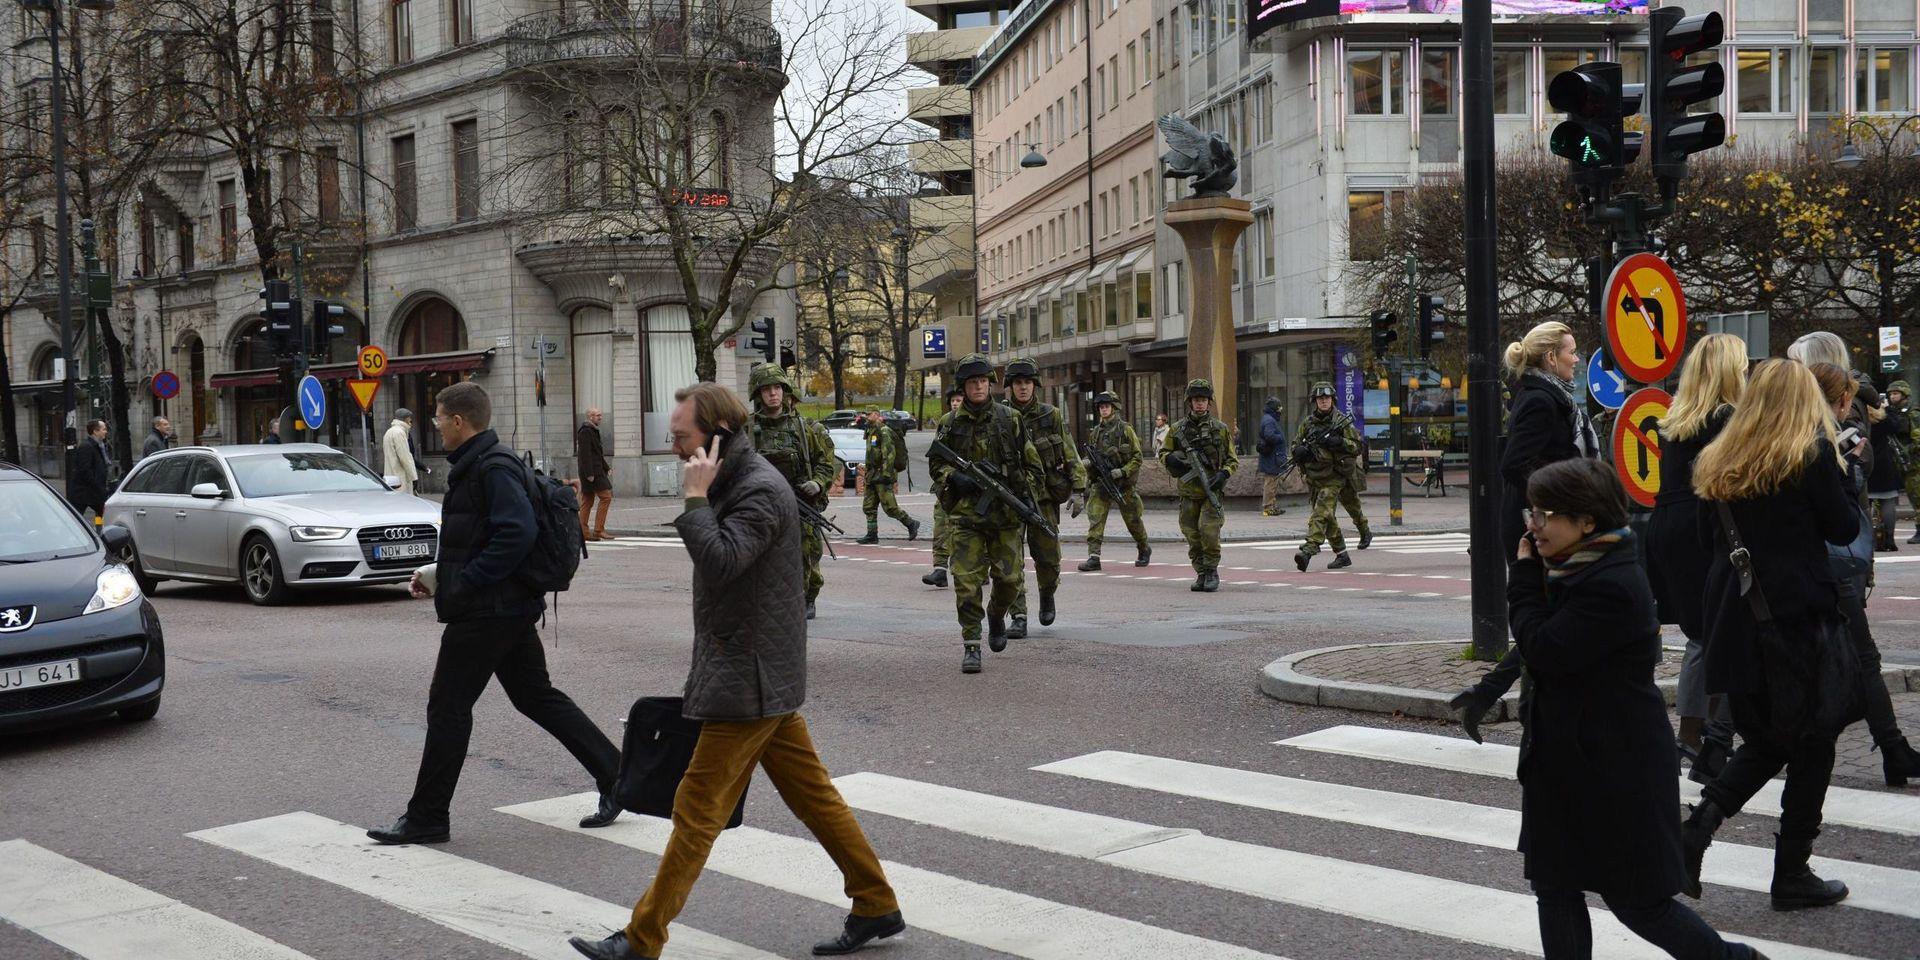 Bilden är från en militärövning i Stockholm, men vi kanske får se liknande bilder i Halmstad under onsdagen när Hemvärnssoldater uppmuntras att gå i uniform på jobbet. Minus alla vapen, förhoppningsvis.